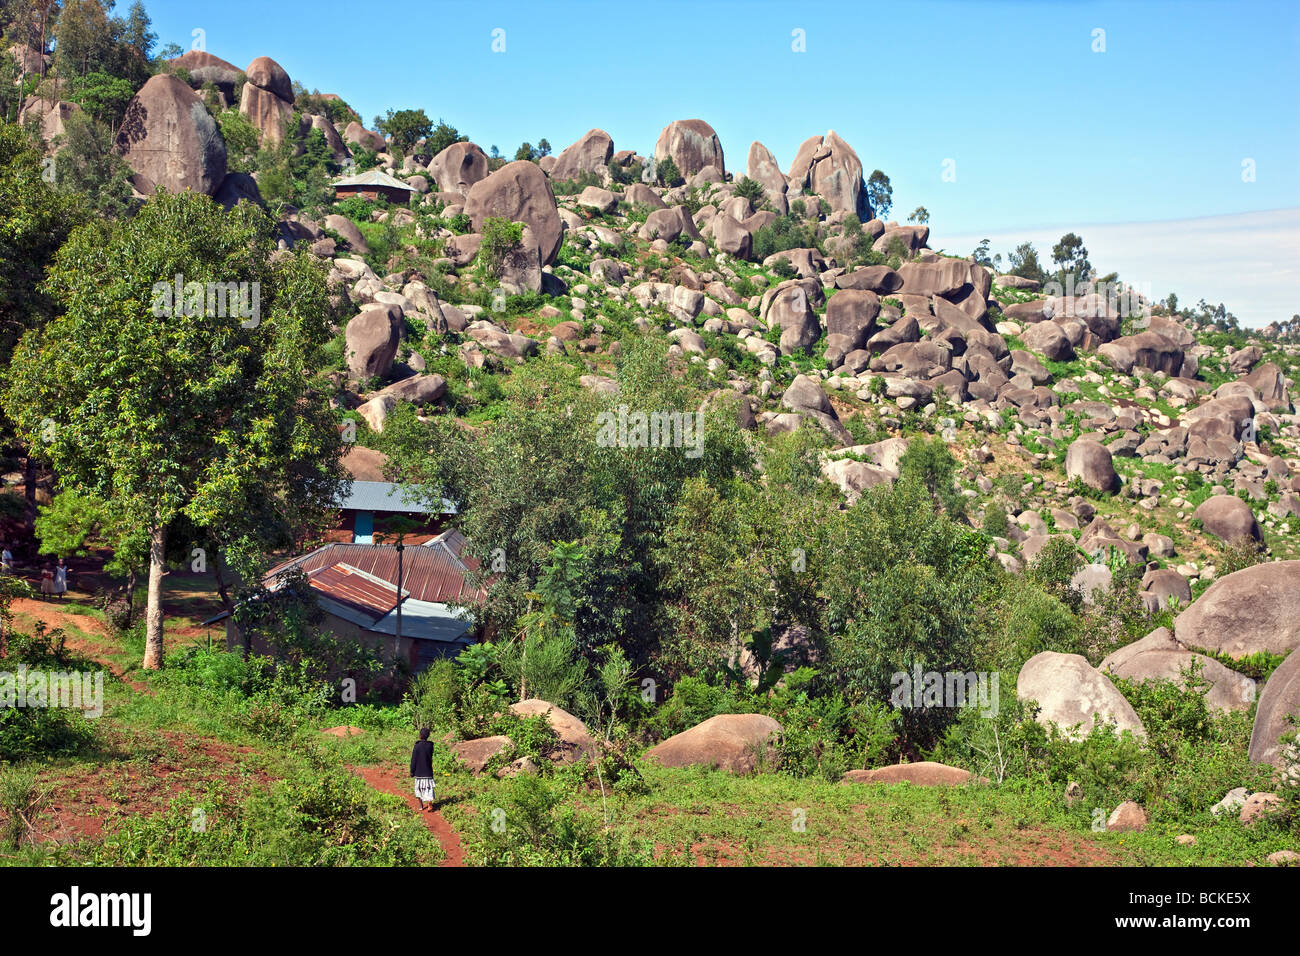 Kenya. Planteles enclavado entre gigantescas rocas de granito en el oeste de Kenia. Foto de stock